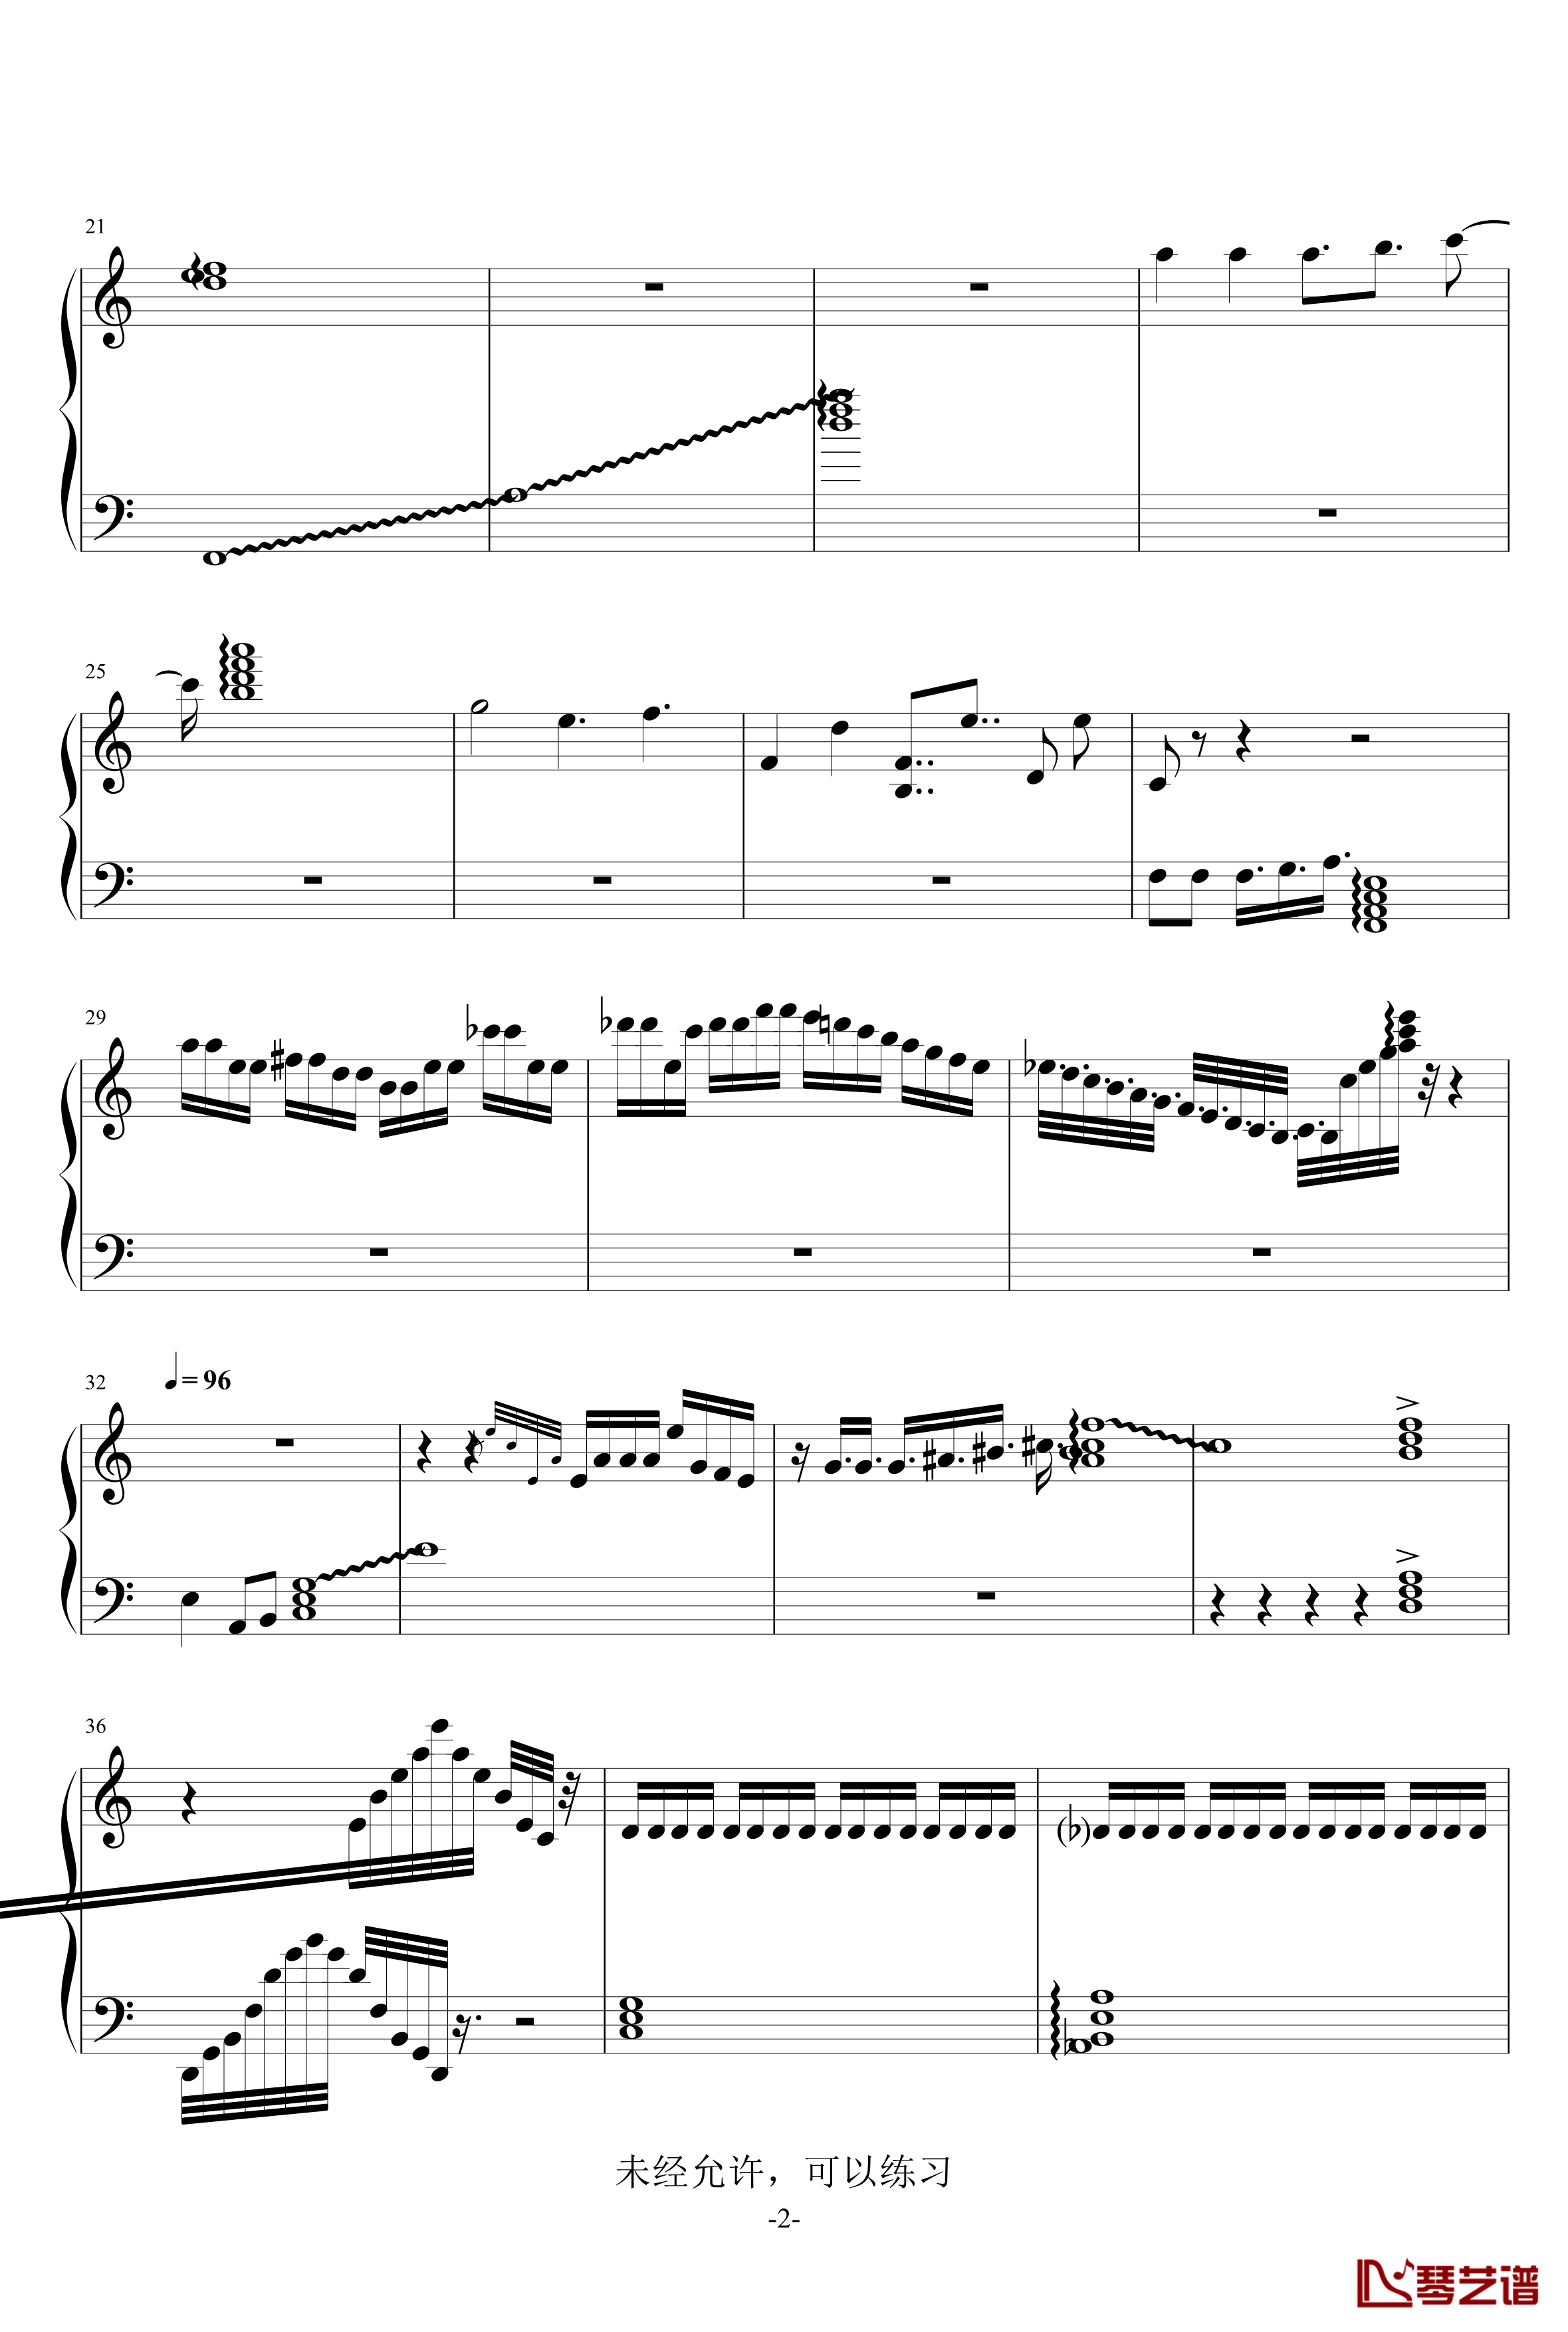 灵活练习曲钢琴谱-幽萌2